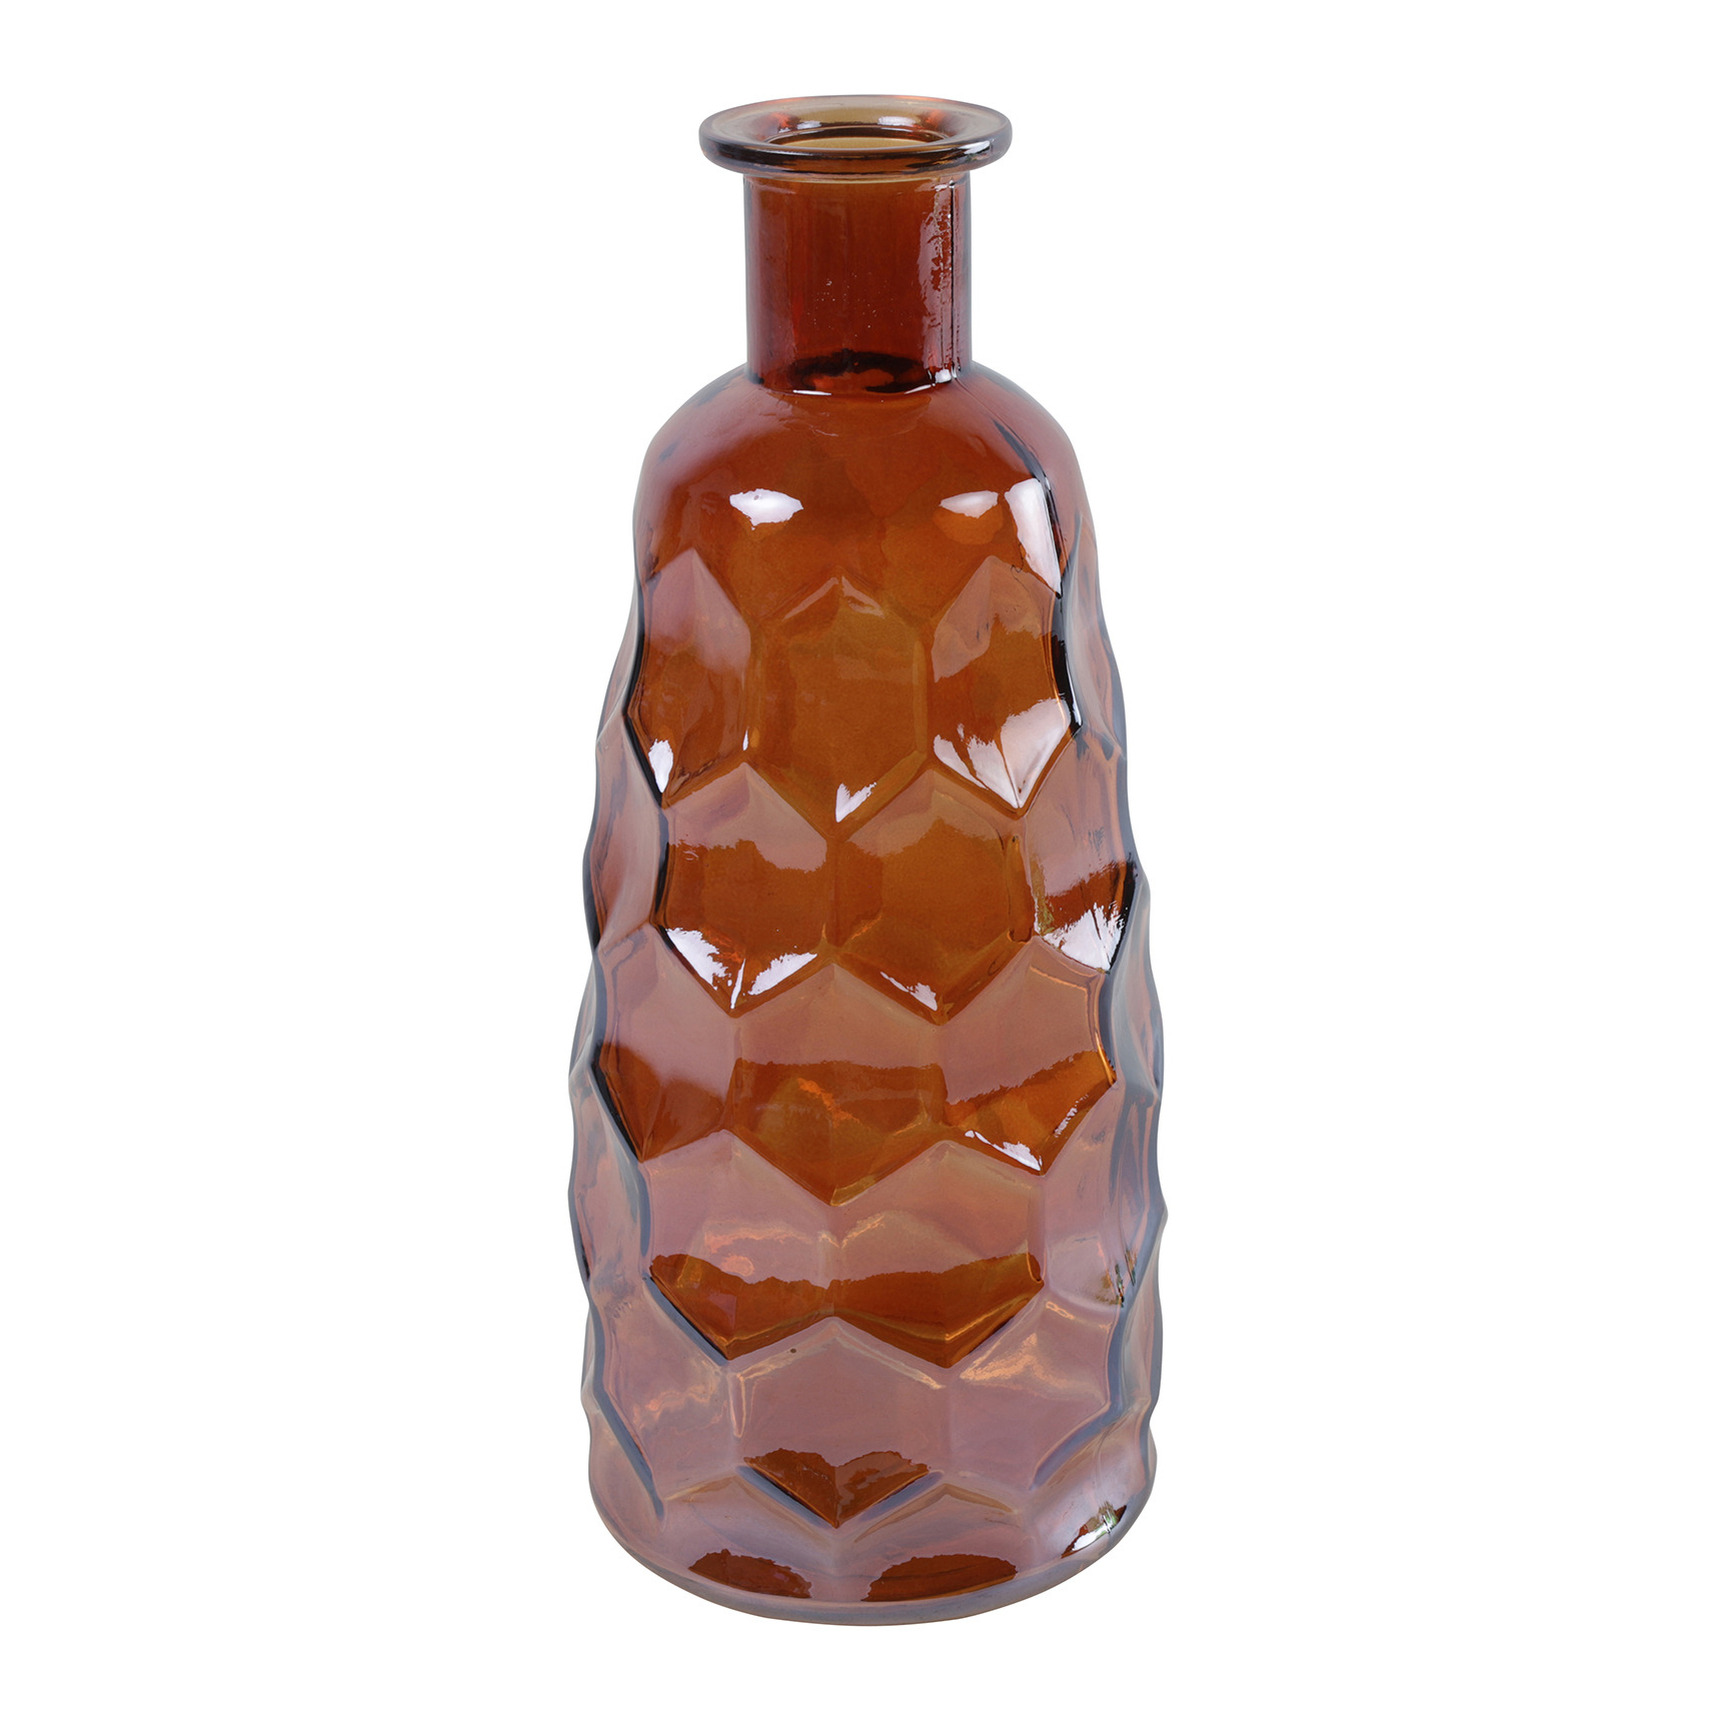 Countryfield Art Deco bloemenvaas cognac bruin transparant glas fles vorm D12 x H30 cm